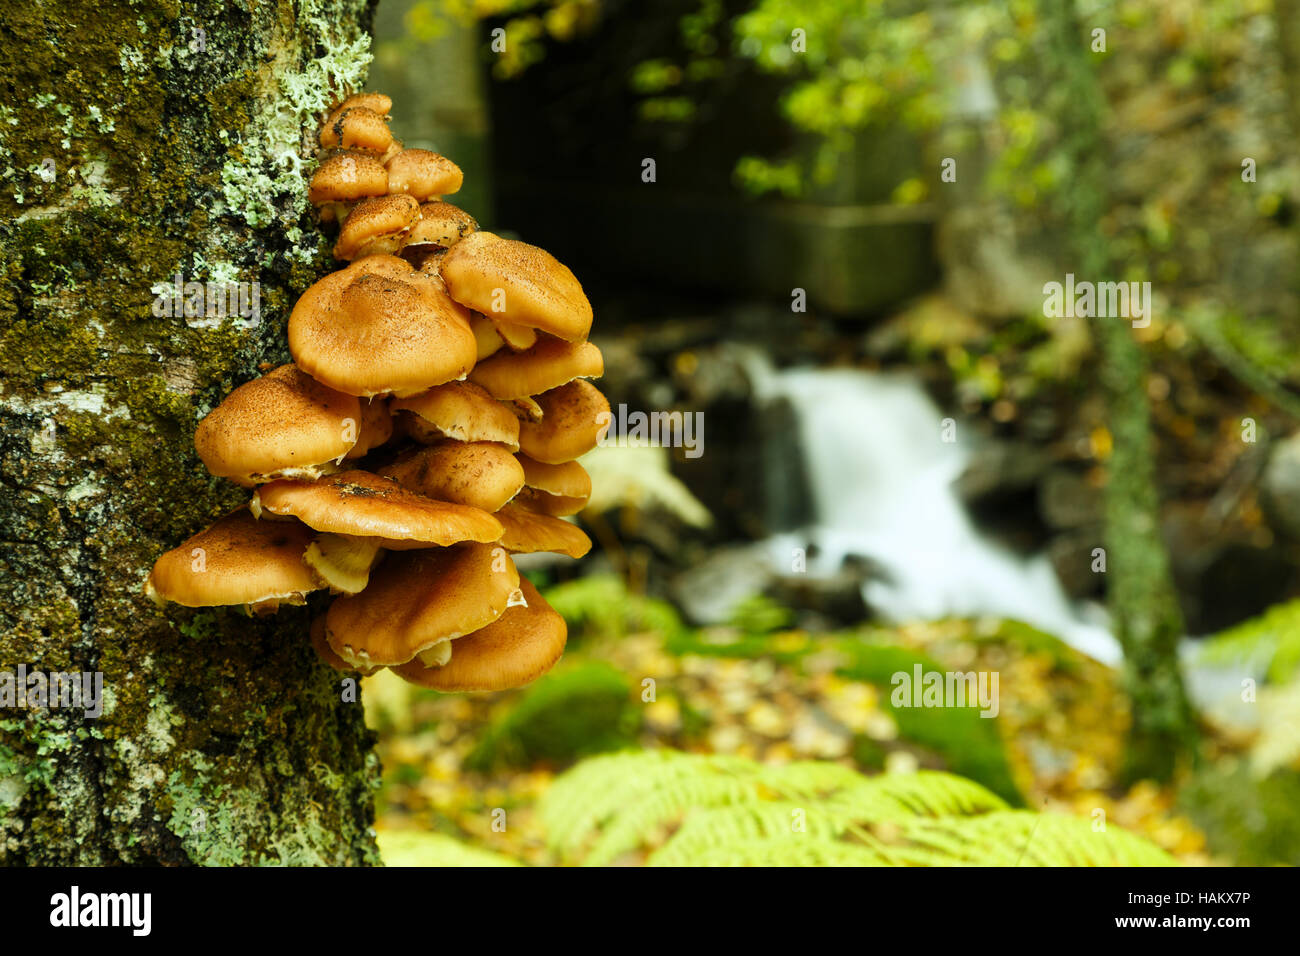 Autumn mushrooms Stock Photo